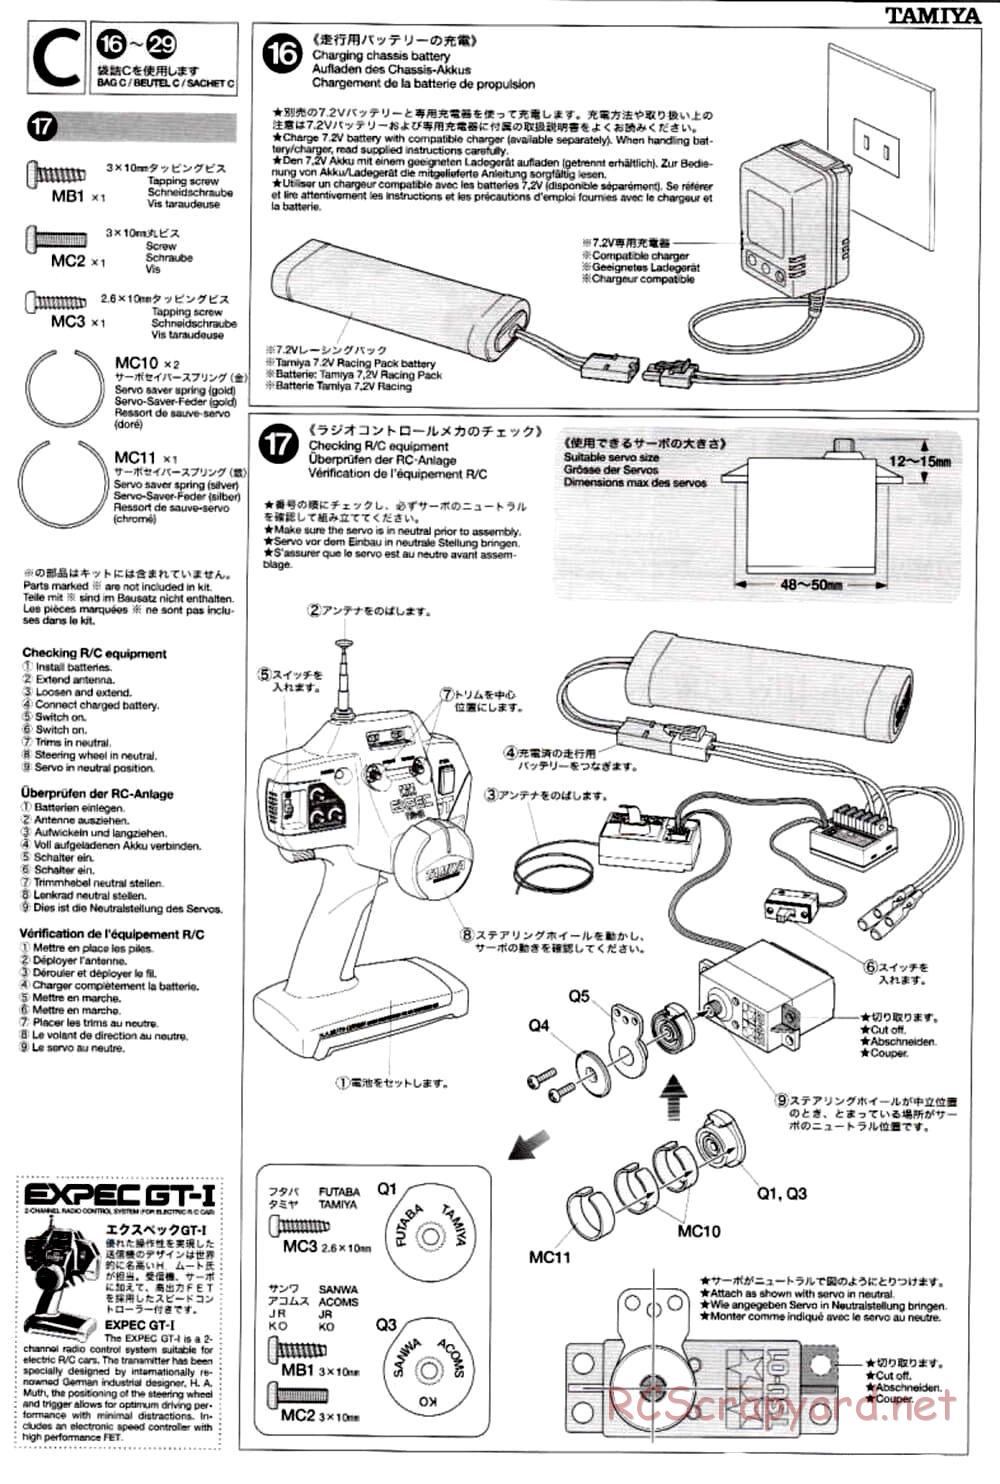 Tamiya - TB-02 Chassis - Manual - Page 11